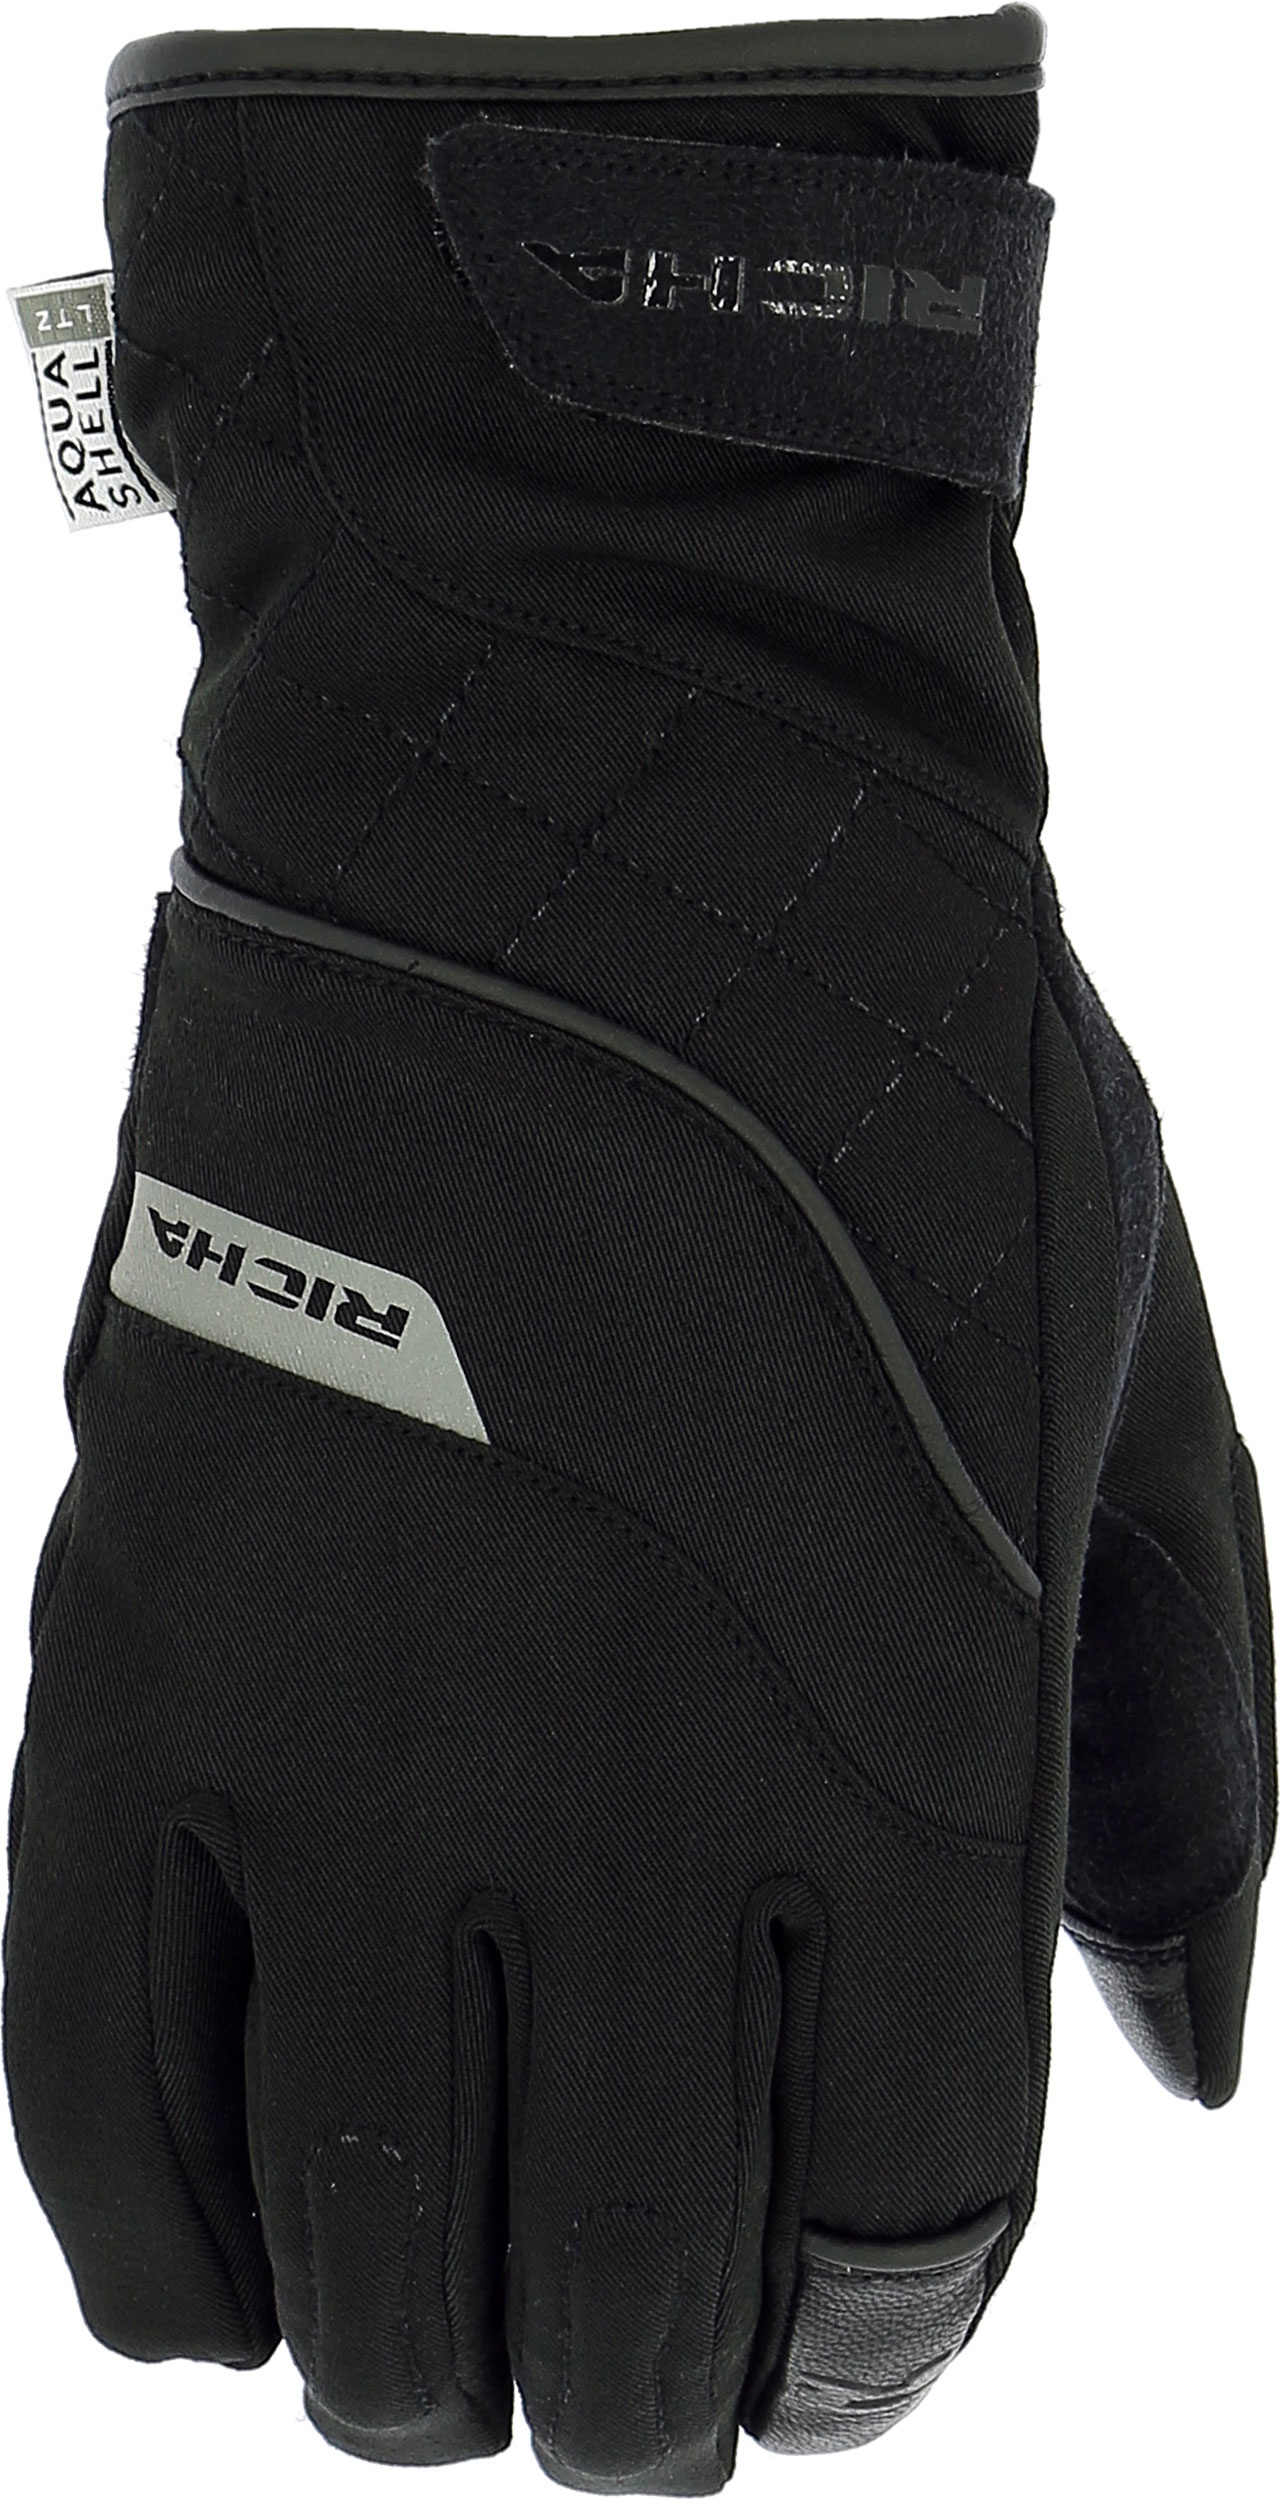 Richa Tina 2, gants imperméables femmes - Noir - XL